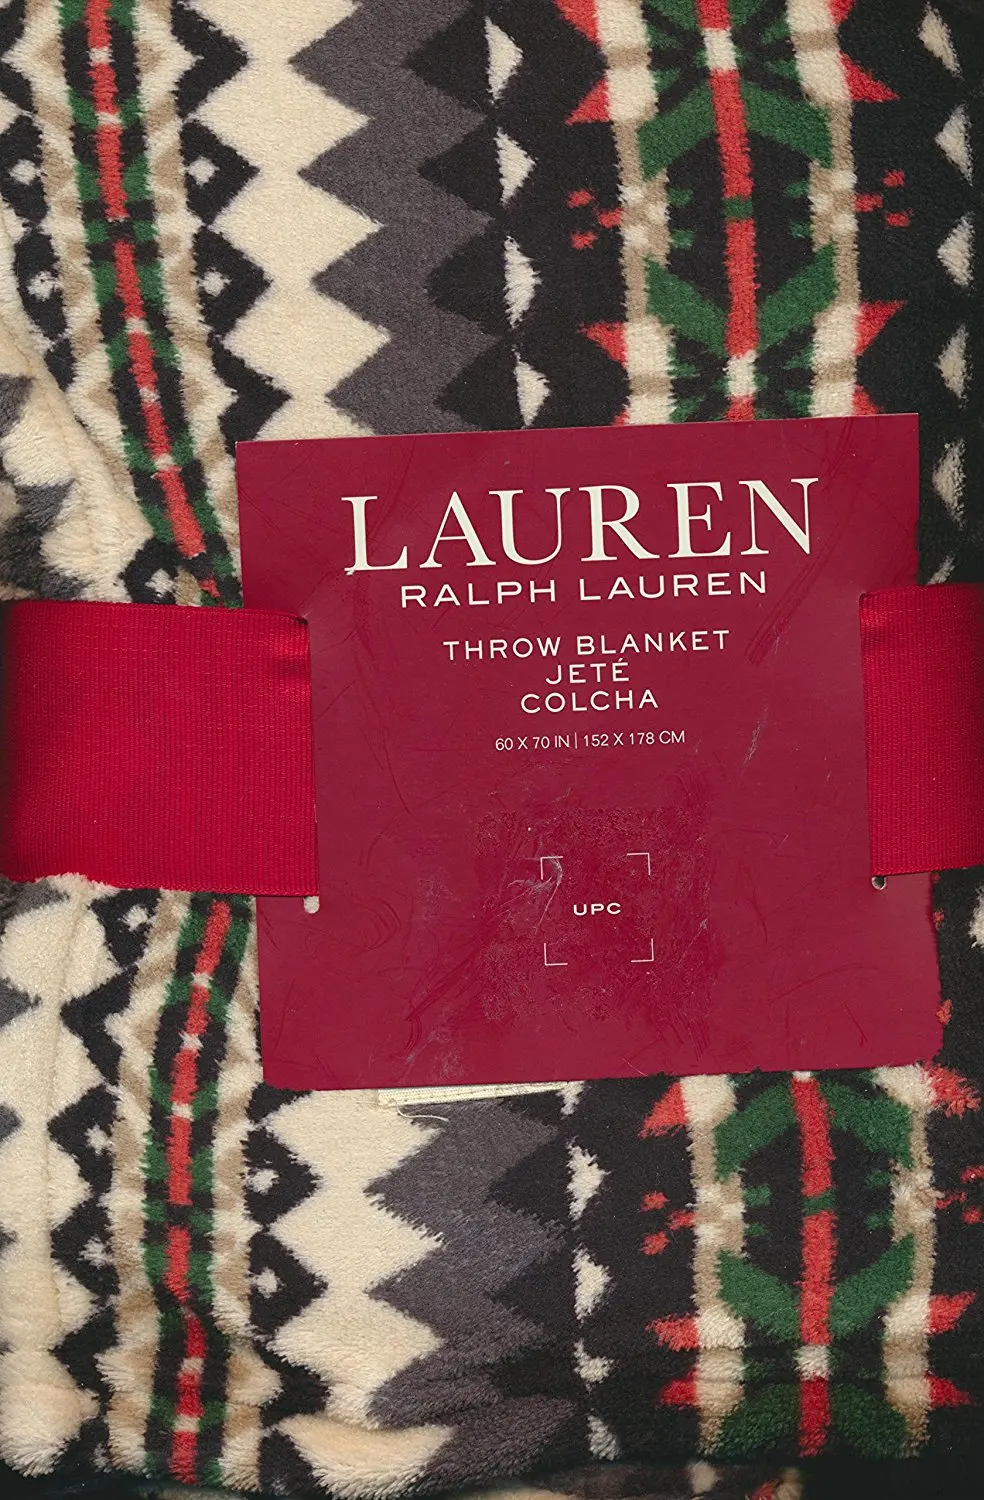 Buy Lauren Ralph Lauren Throw Blanket Jete Colcha Tribal Aztec Design In Cheap Price On Alibabacom